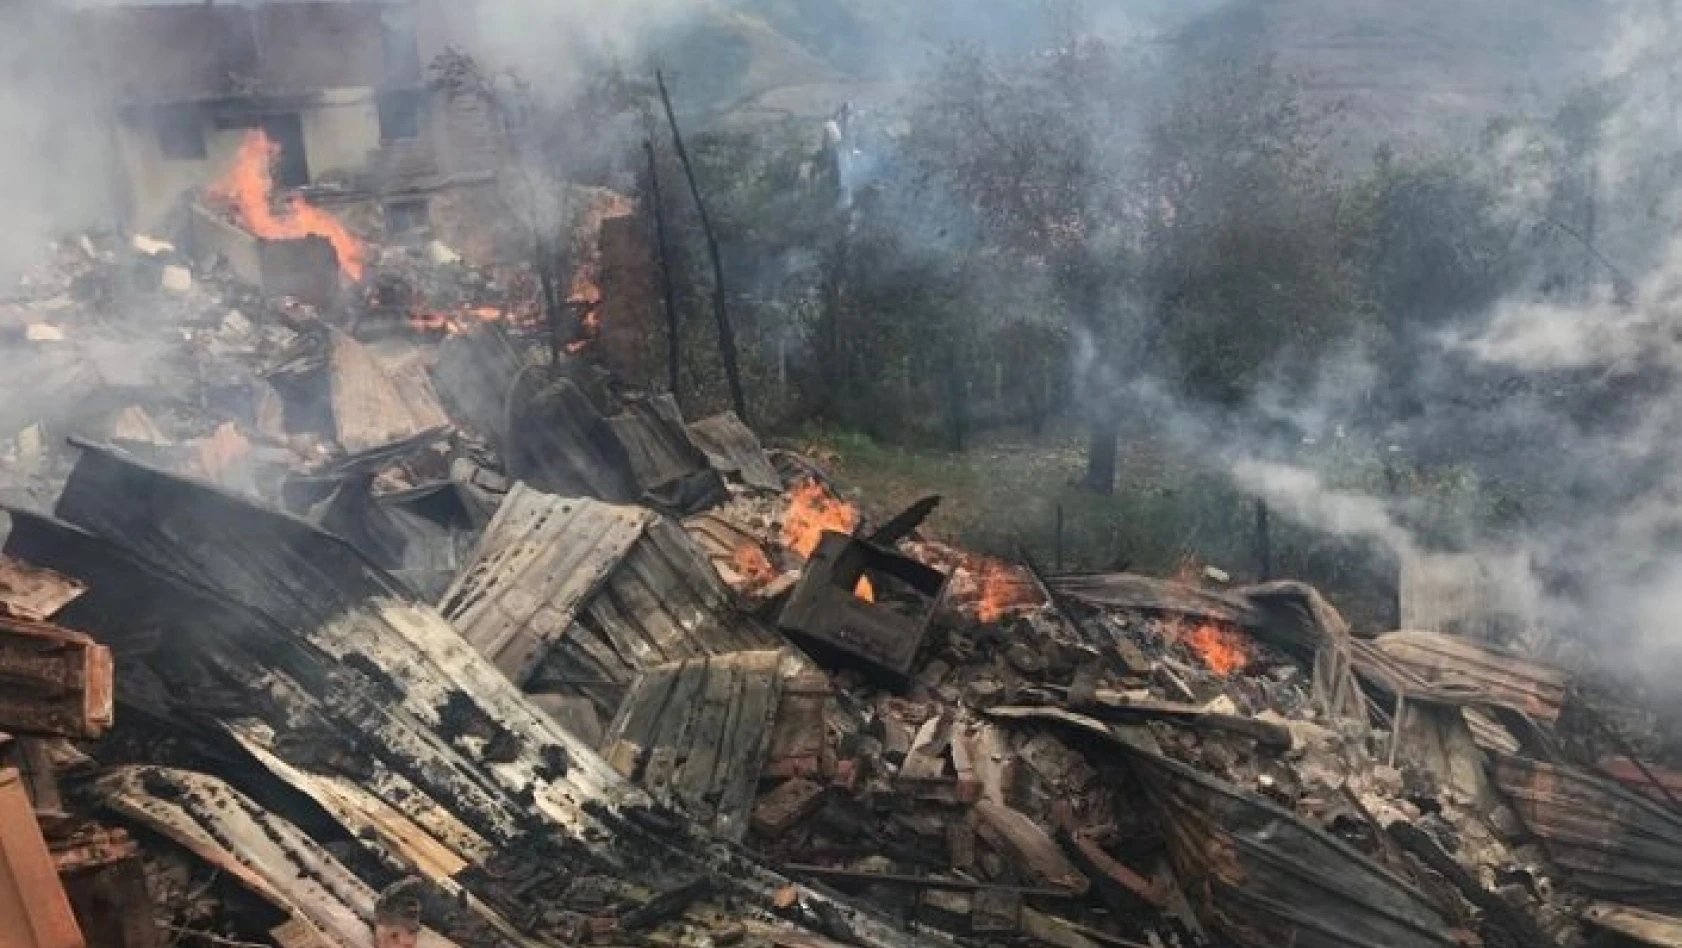 Kastamonu'daki yangında yanan ev sayısı 10'a yükseldi!